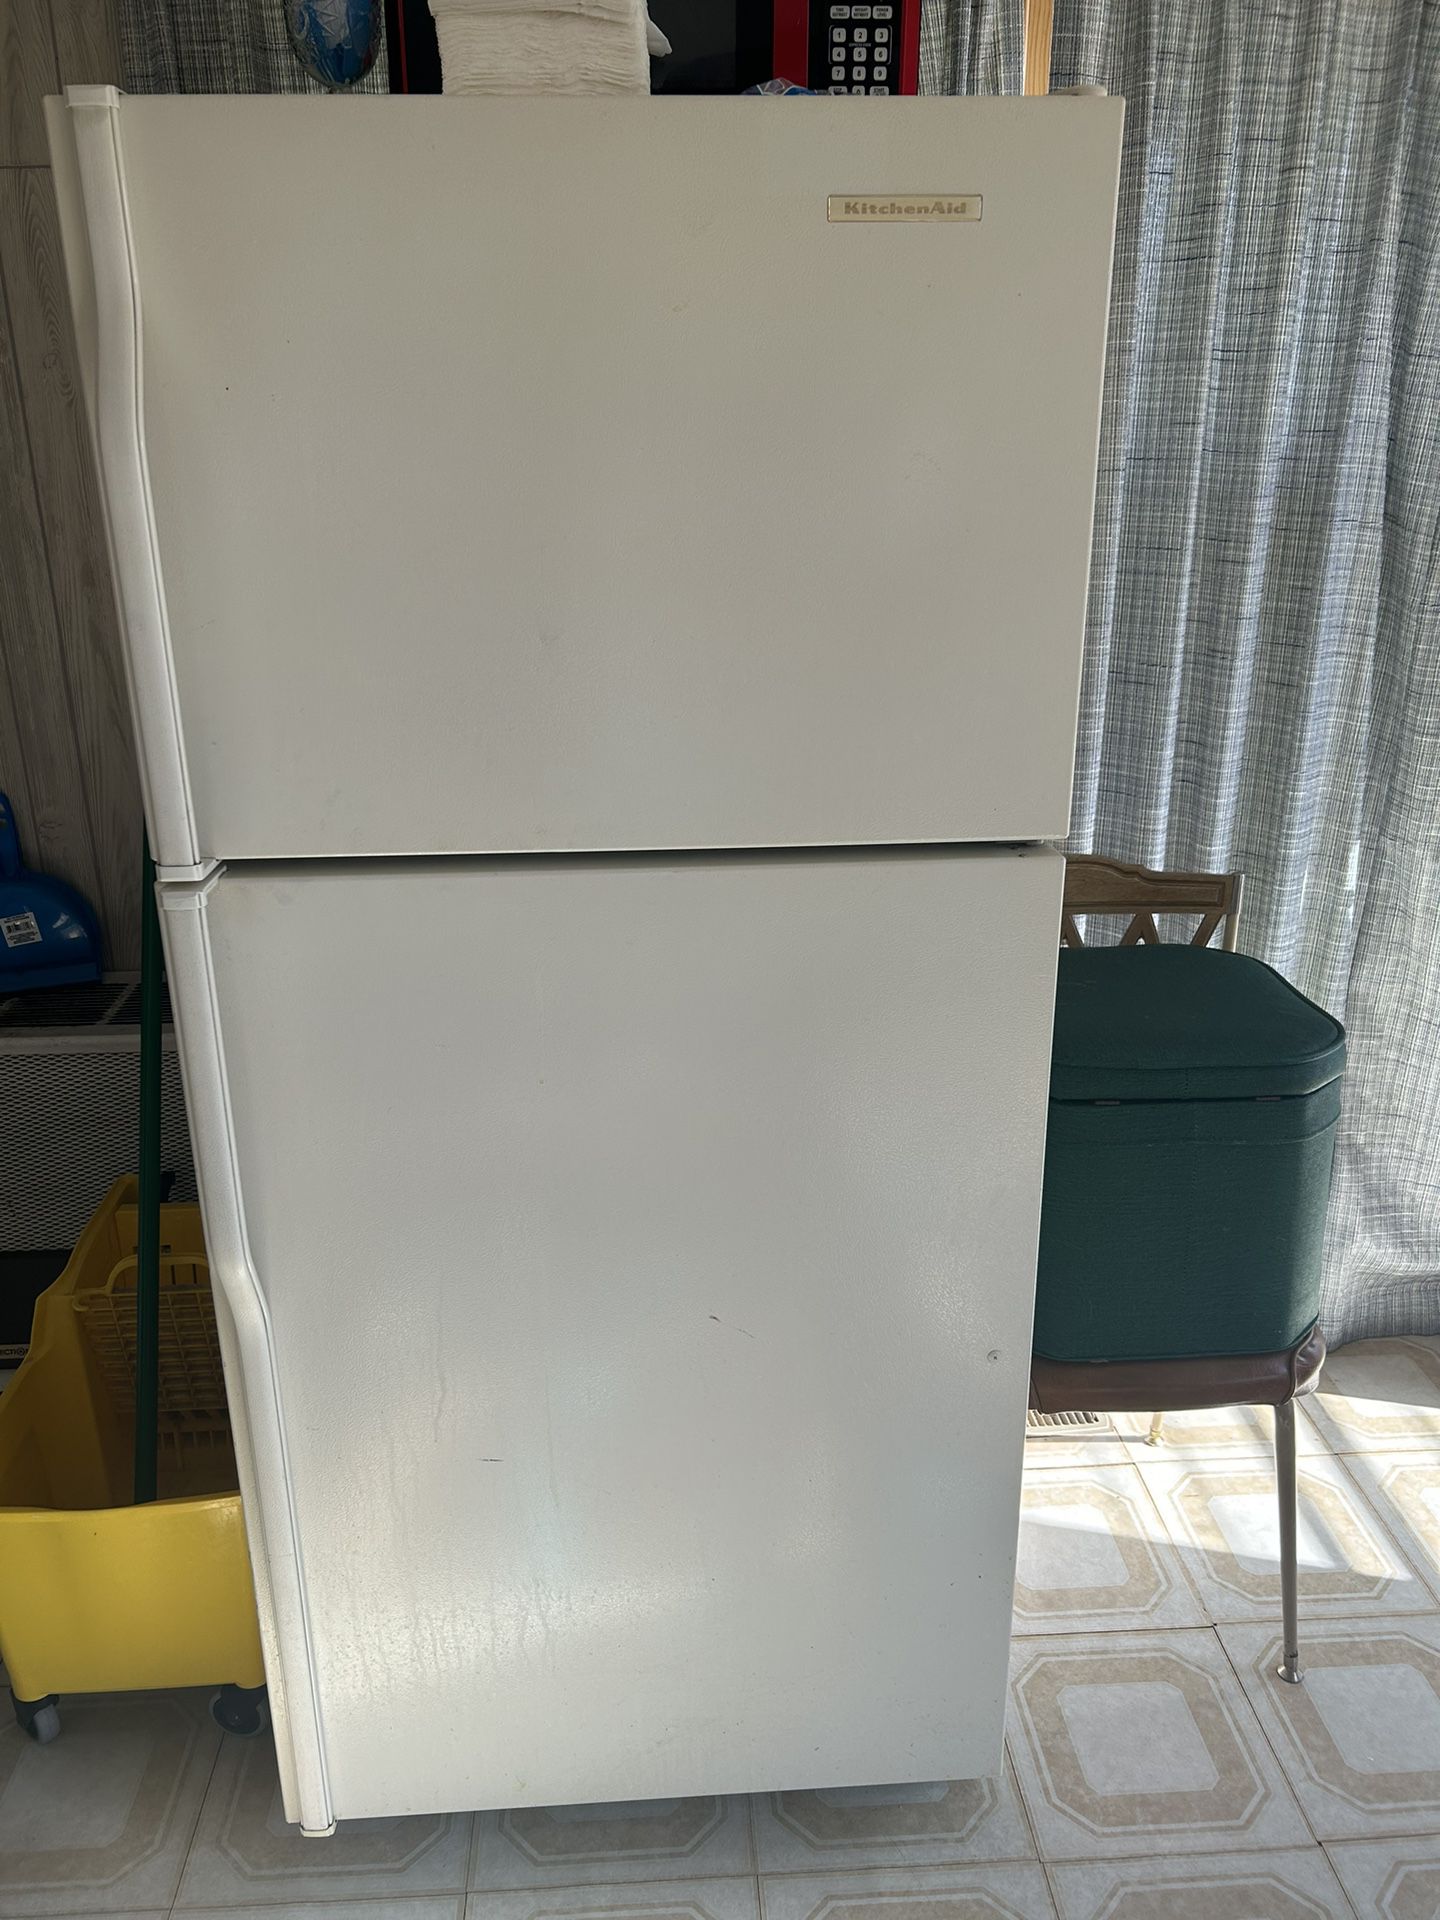 Kithenaide Refrigerator And Hamilton Beach Microwave 